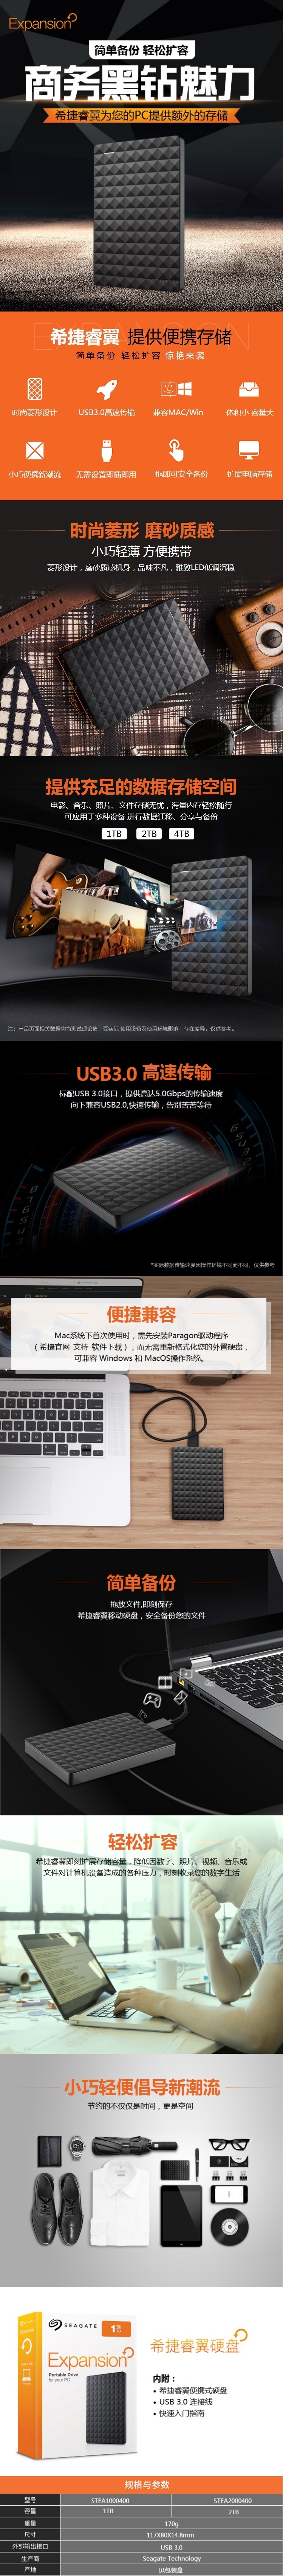 【希捷STEA1000400】希捷（Seagate）STEA1000400 睿翼2.5英寸USB3..jpg